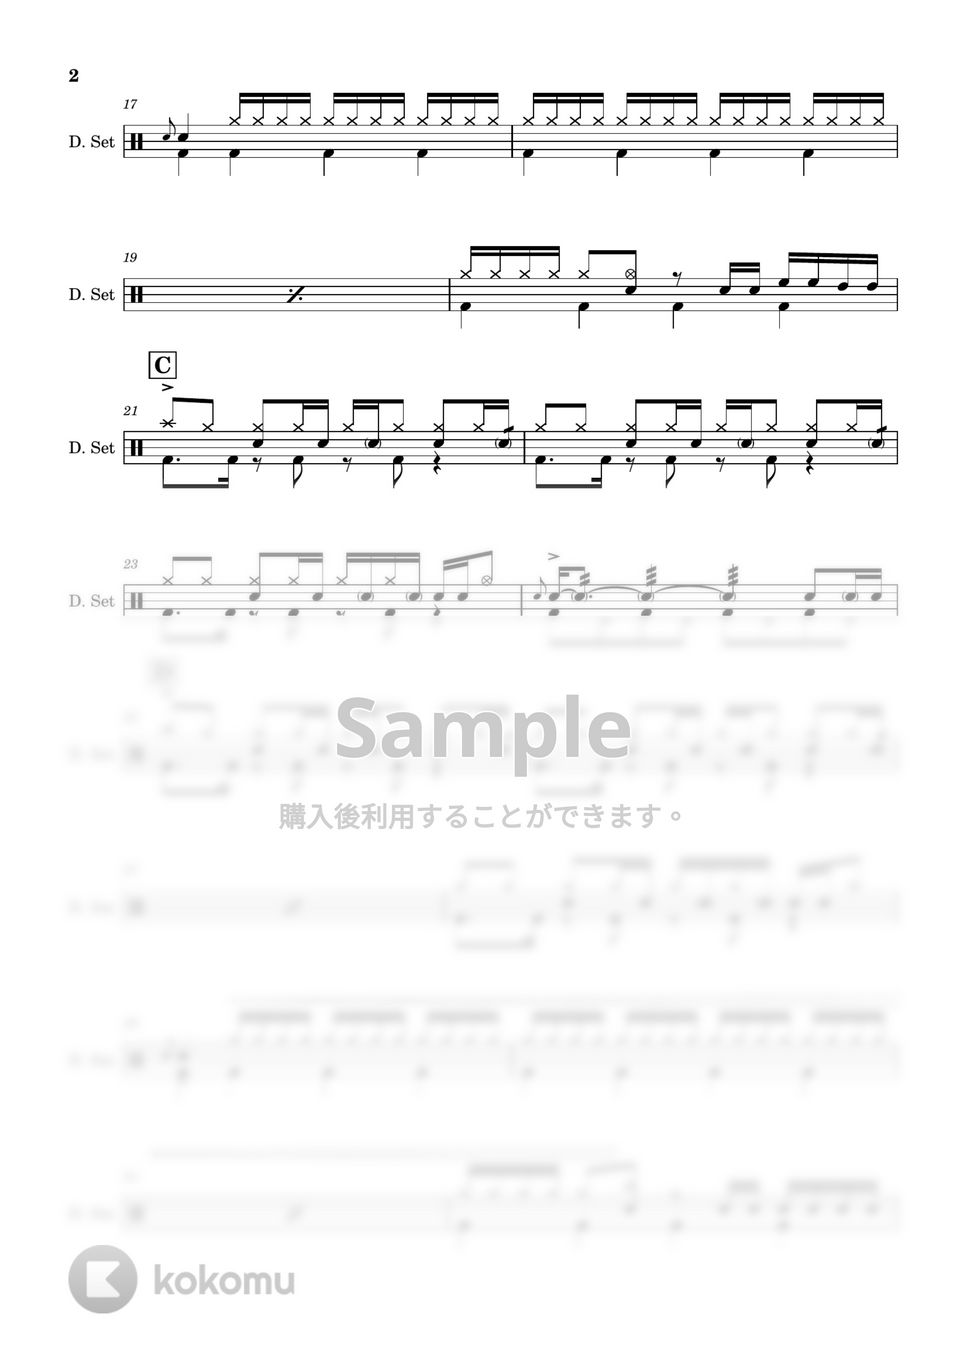 東京事変 - 【ドラム楽譜】 電波通信 / 東京事変 - Put Your Antenna Up / Tokyo Incidents 【DrumScore】 by Cookie's Drum Score